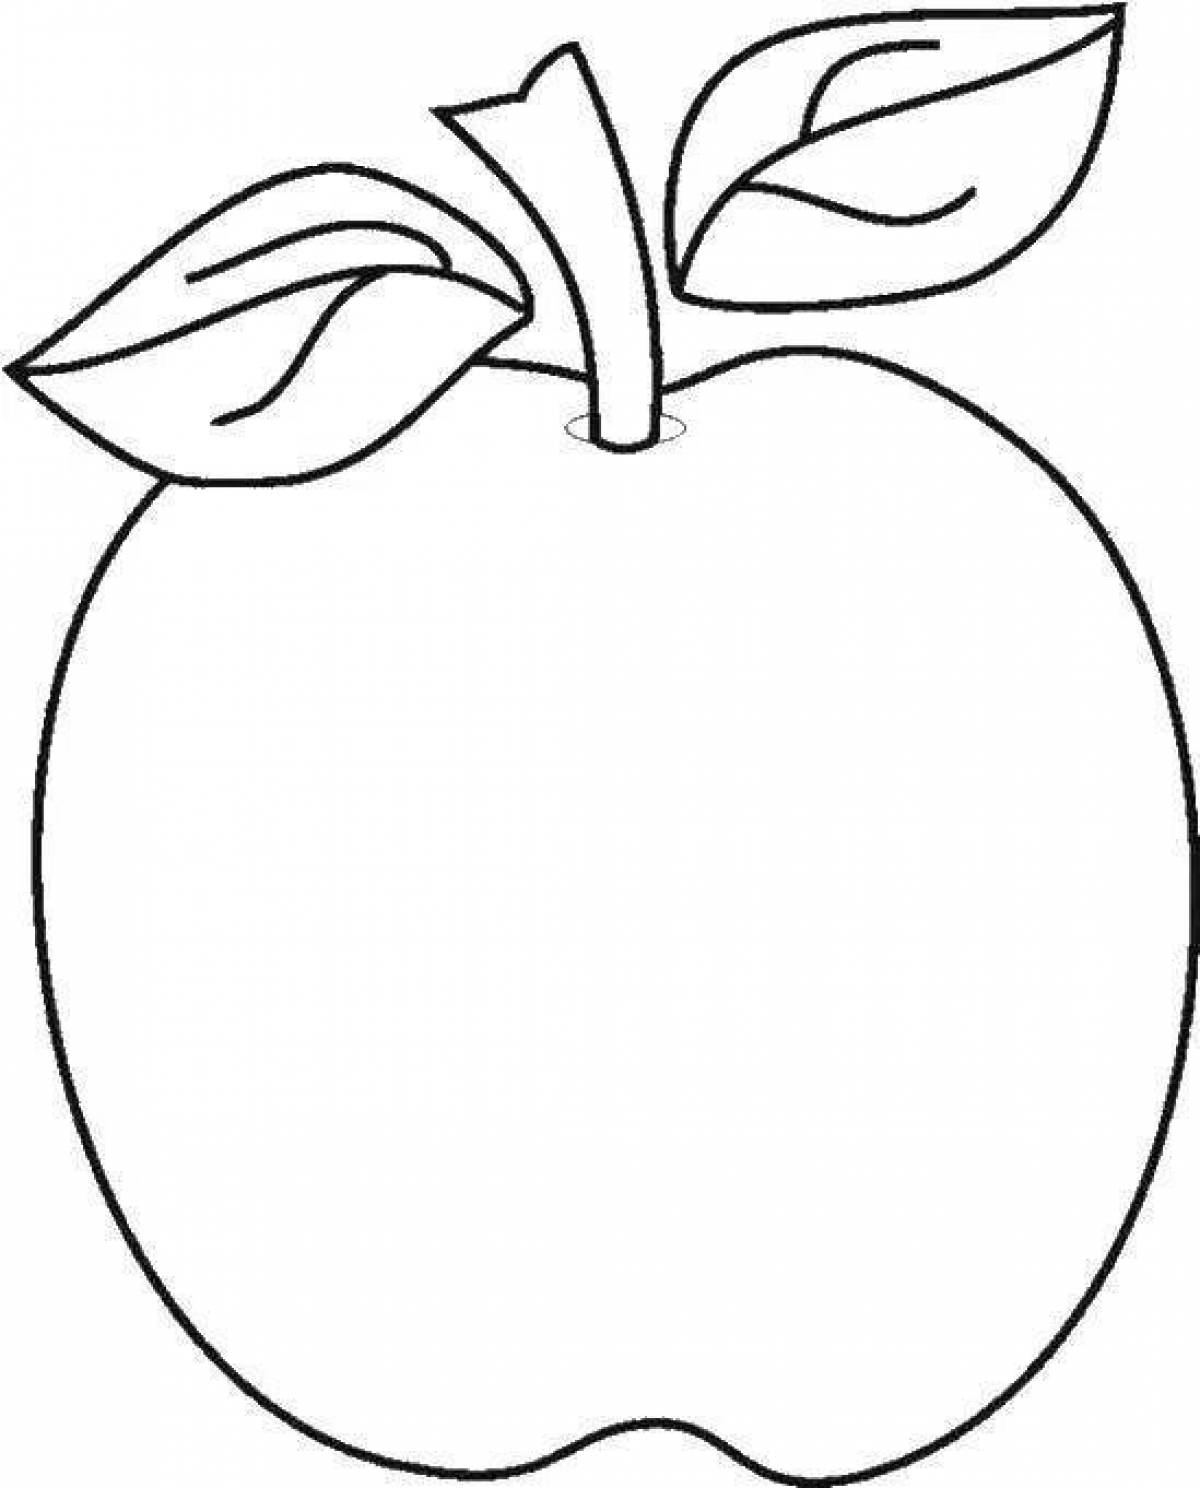 Шаблоны фруктов. Яблоко раскраска для детей. Яблоко раскраска для малышей. Яблоко трафарет для рисования. Раскраска яблочко для малышей.